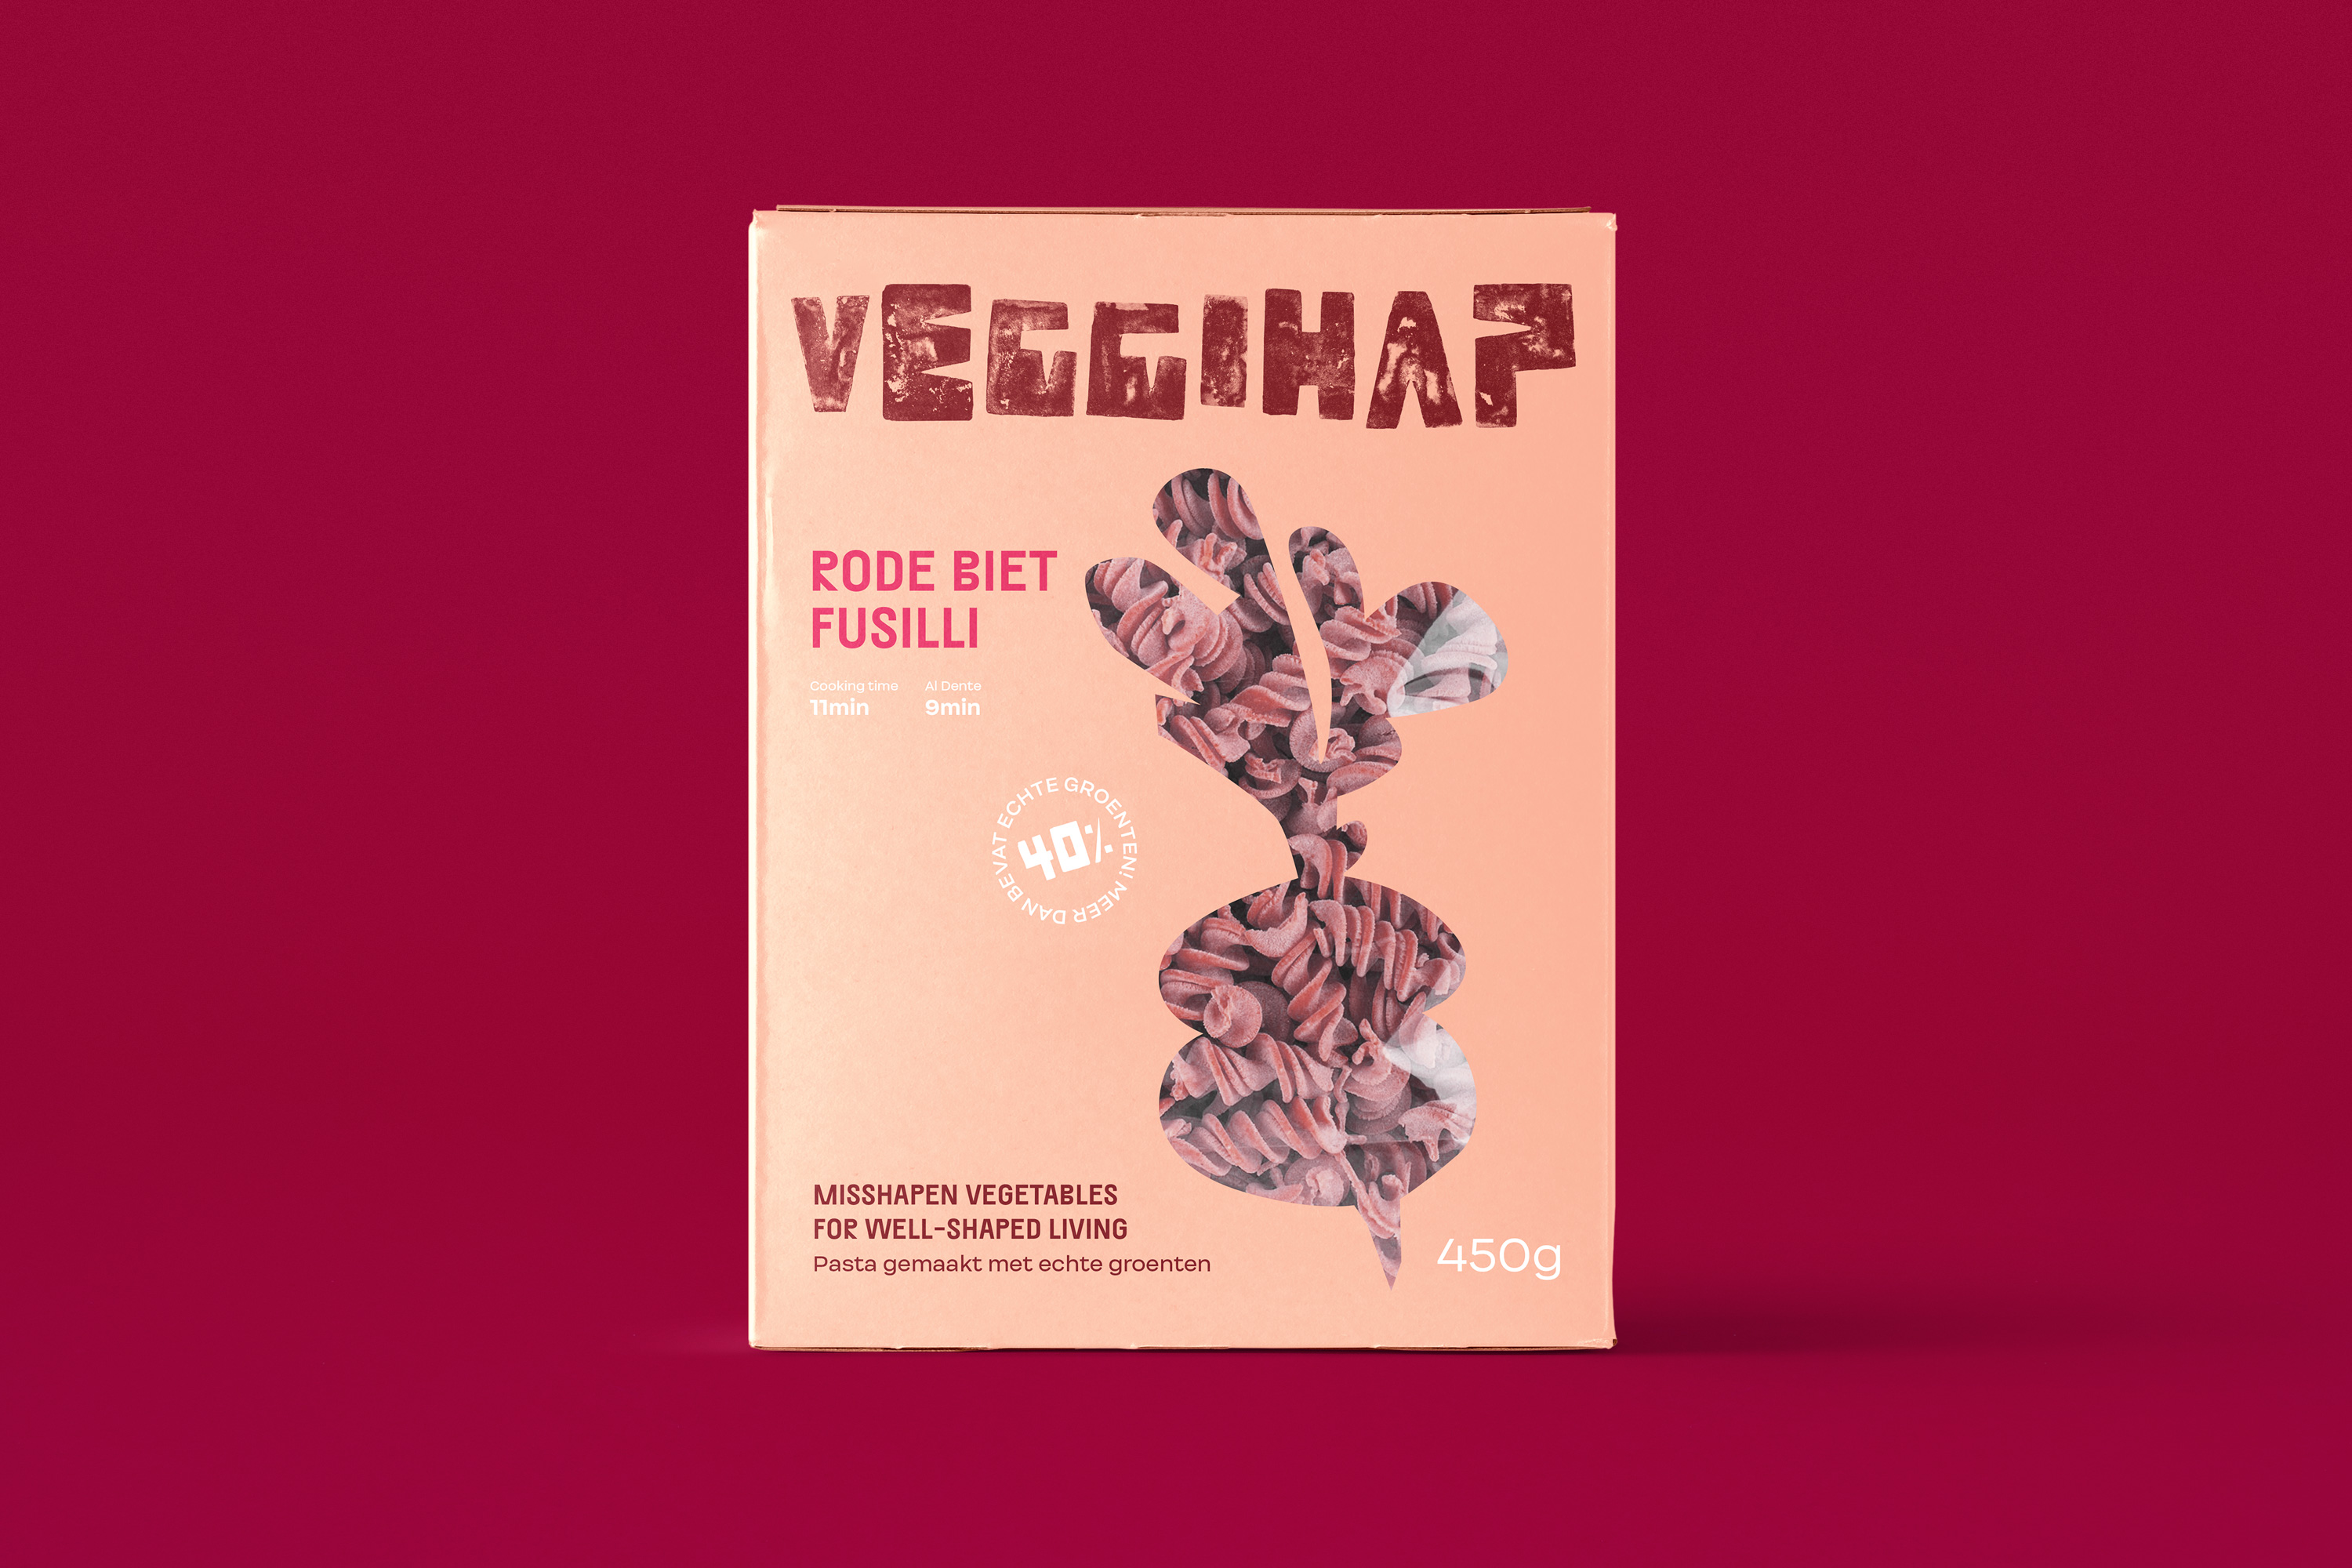 DITTMAR_veggihap_packaging